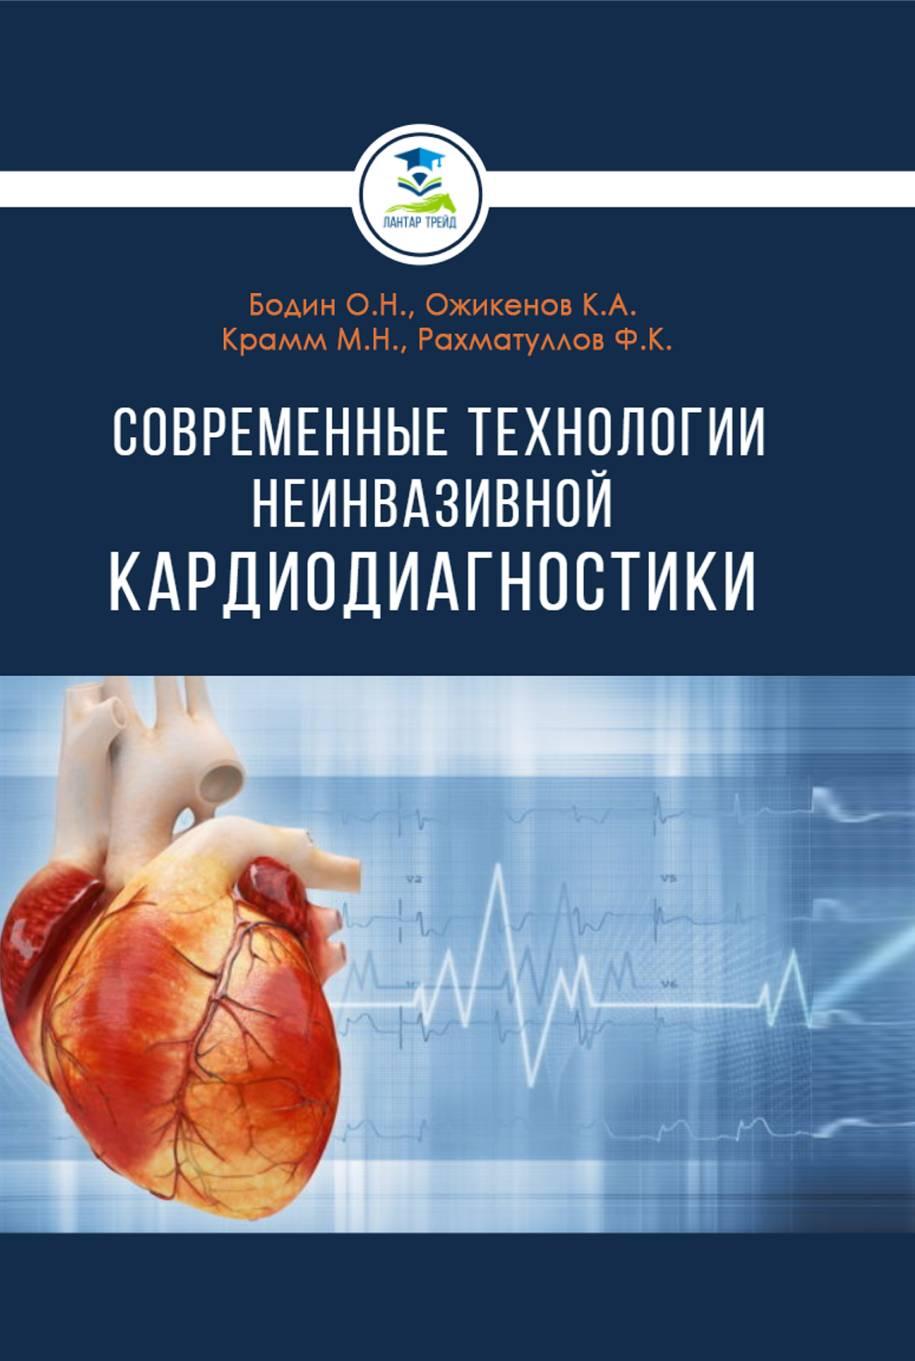 Современные технологии неинвазивной кардиодиагностики:монография.